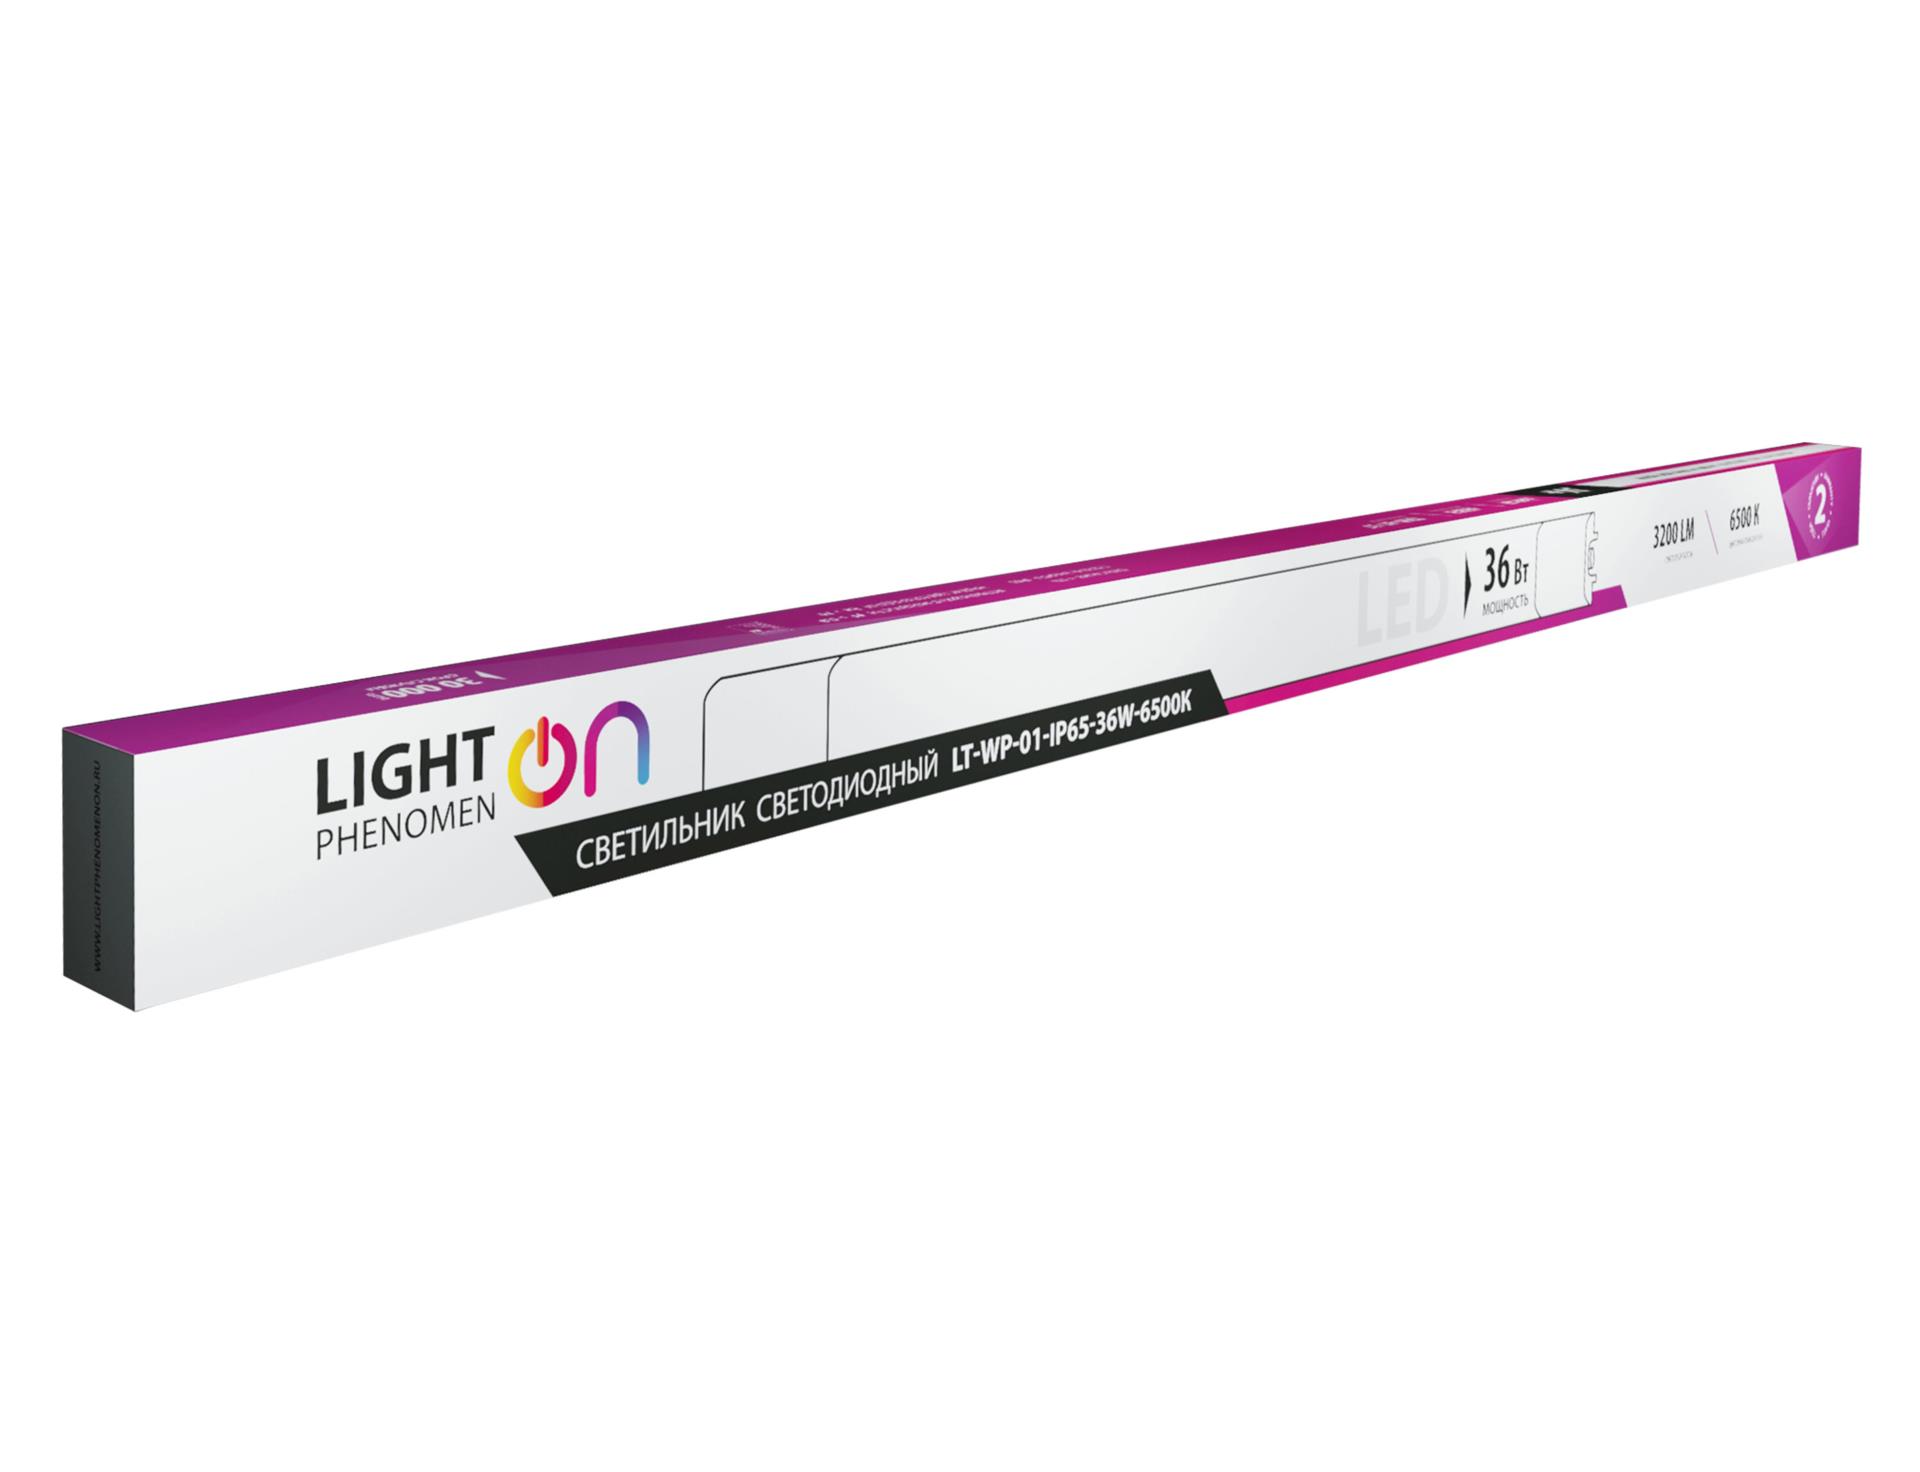 Светильник светодиодный LightPhenomenON LT-WP-01-IP65-36W-6500К от Вольт Маркет